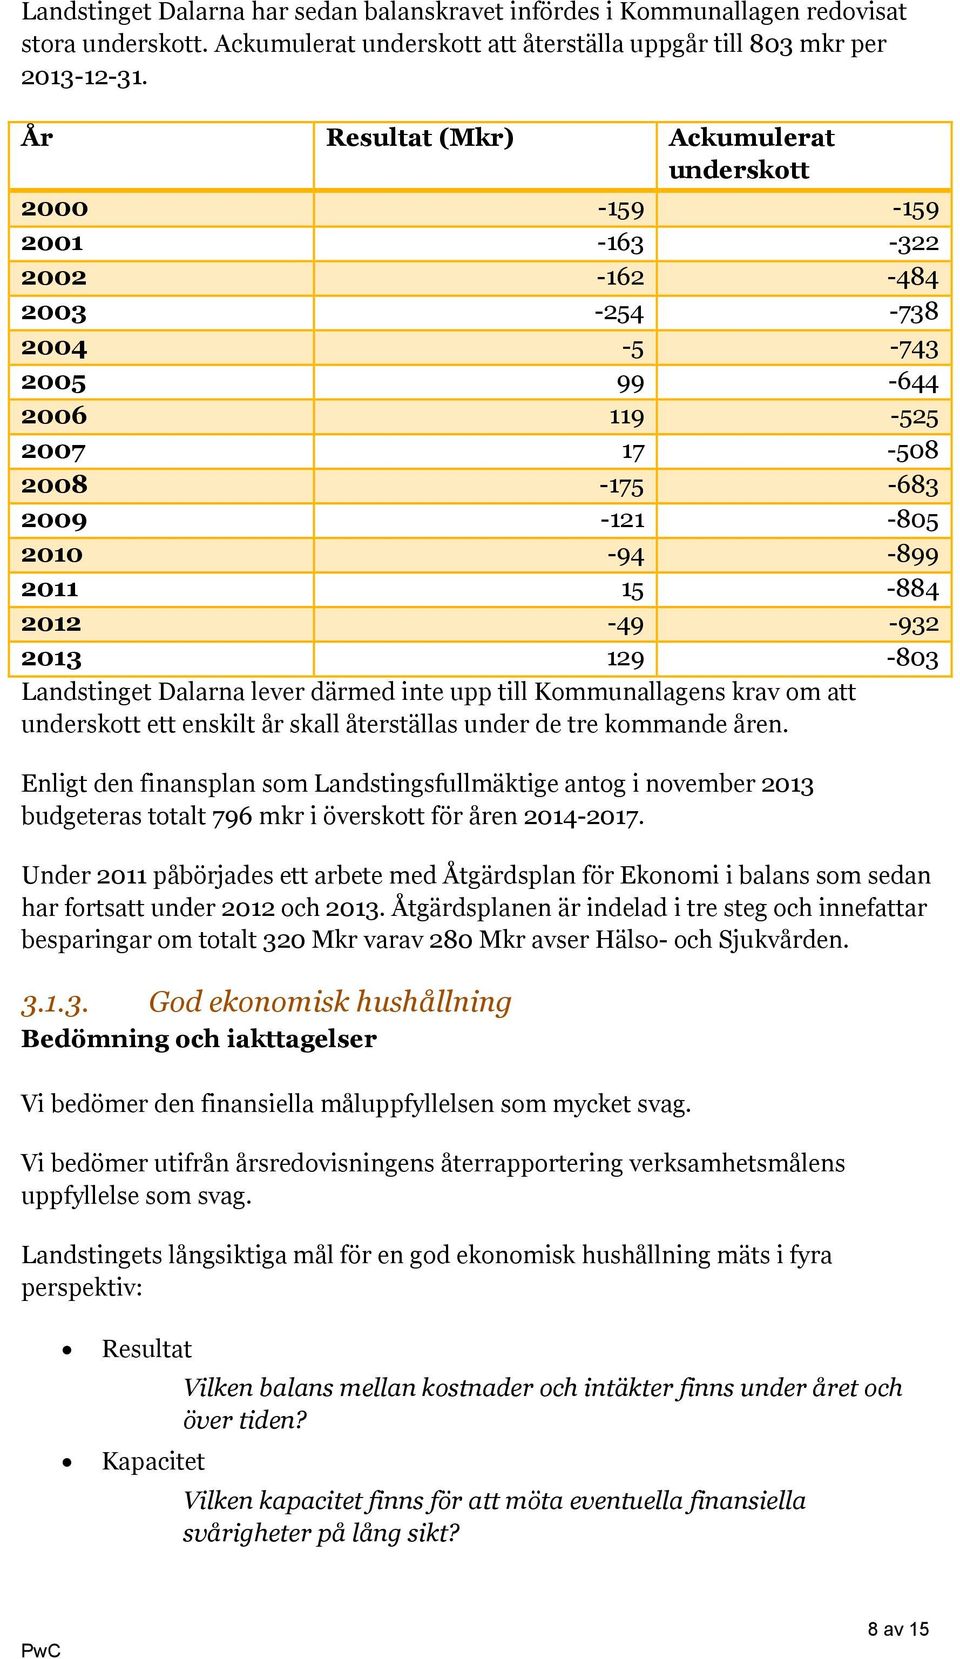 2012-49 -932 2013 129-803 Landstinget Dalarna lever därmed inte upp till Kommunallagens krav om att underskott ett enskilt år skall återställas under de tre kommande åren.